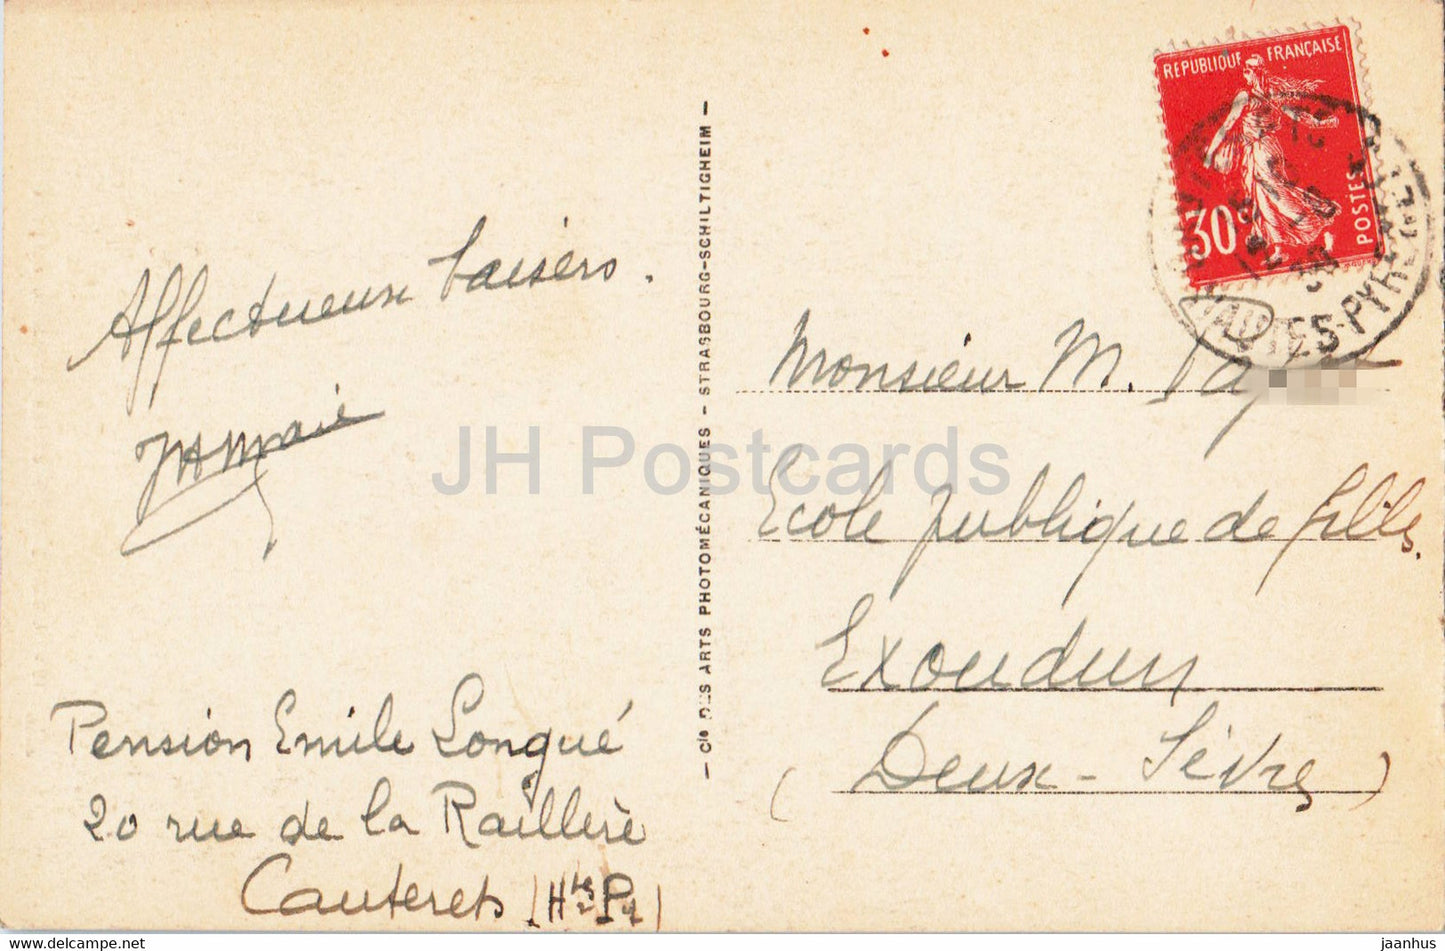 Cauterets - et les sommets neigeux - 194 - carte postale ancienne - 1938 - France - oblitéré